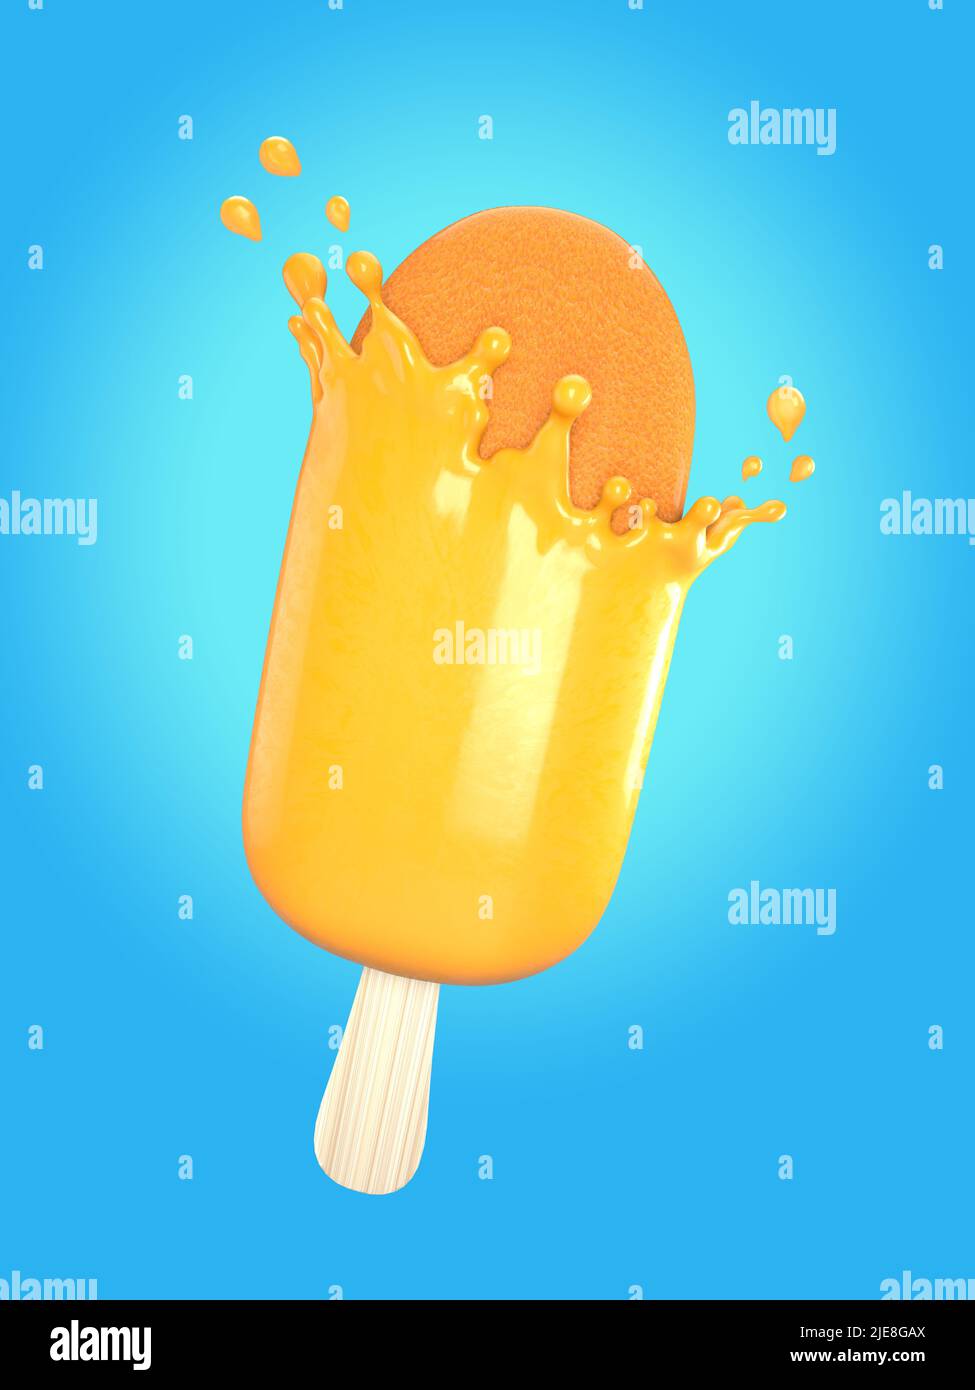 3D Abbildung der orangefarbenen Eisdiele mit Orangensaft-Spritzer, Arbeitsweg oder Schneideweg enthalten Stockfoto